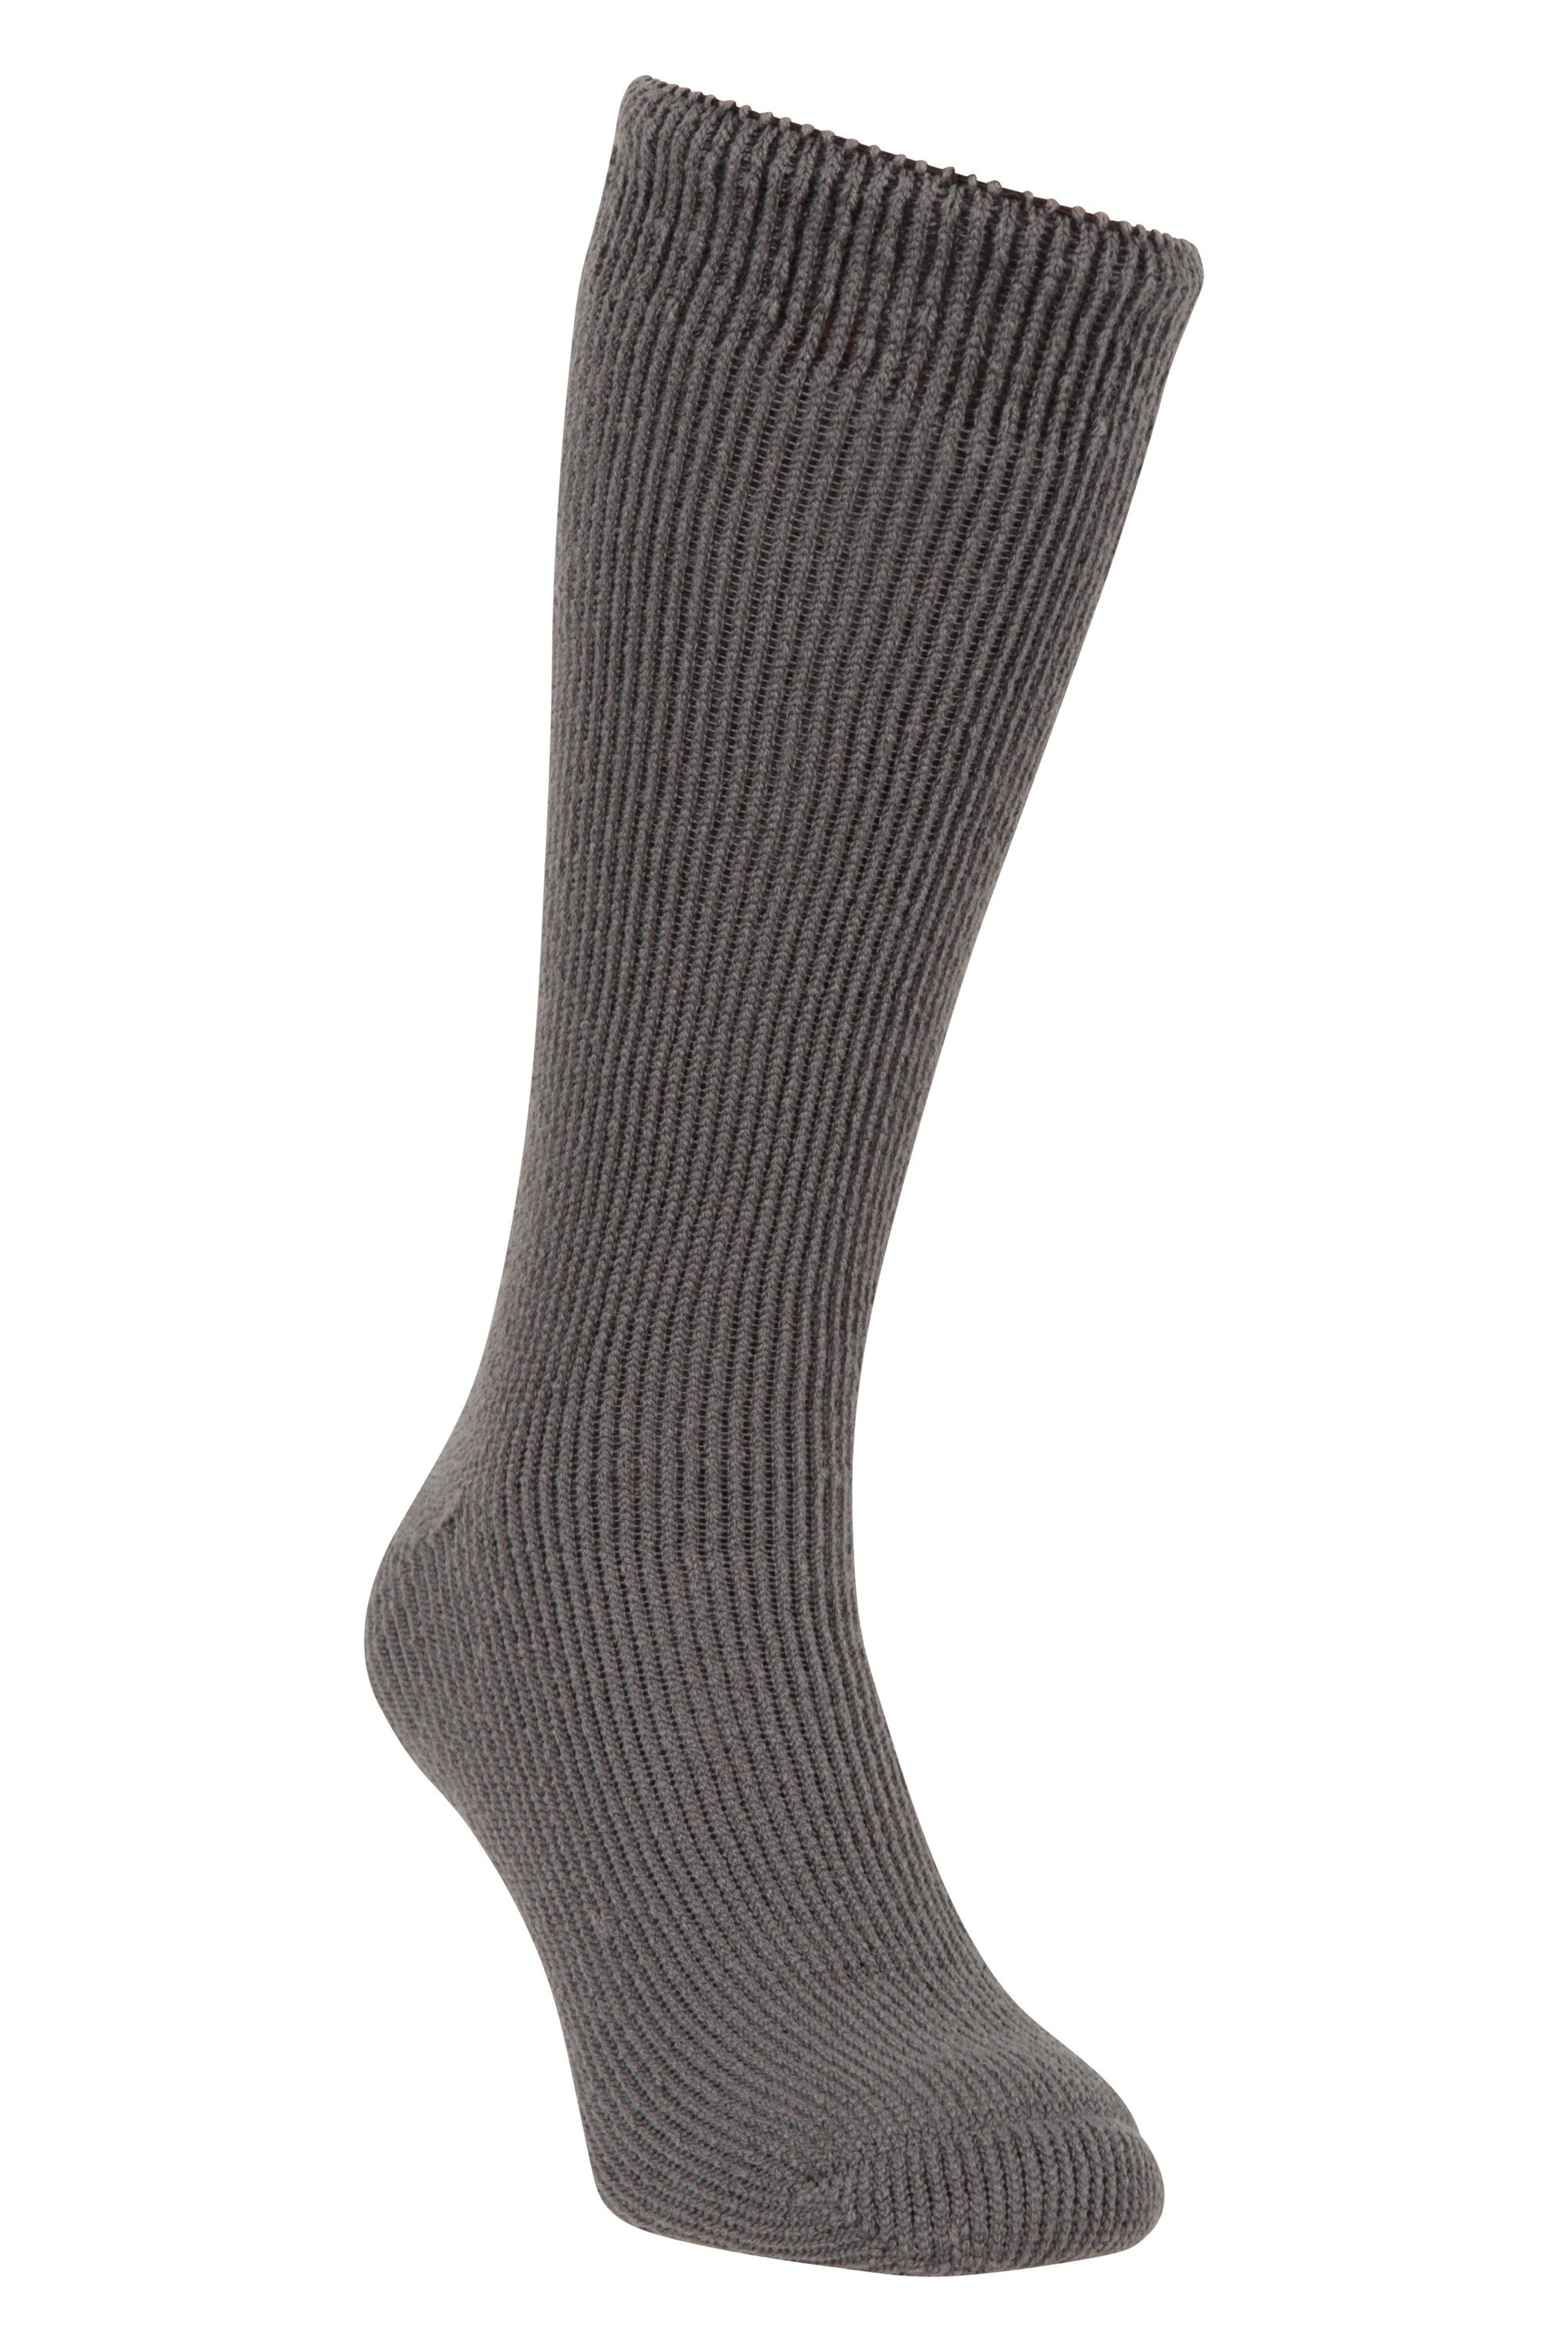 Mens Thermal Socks Grey